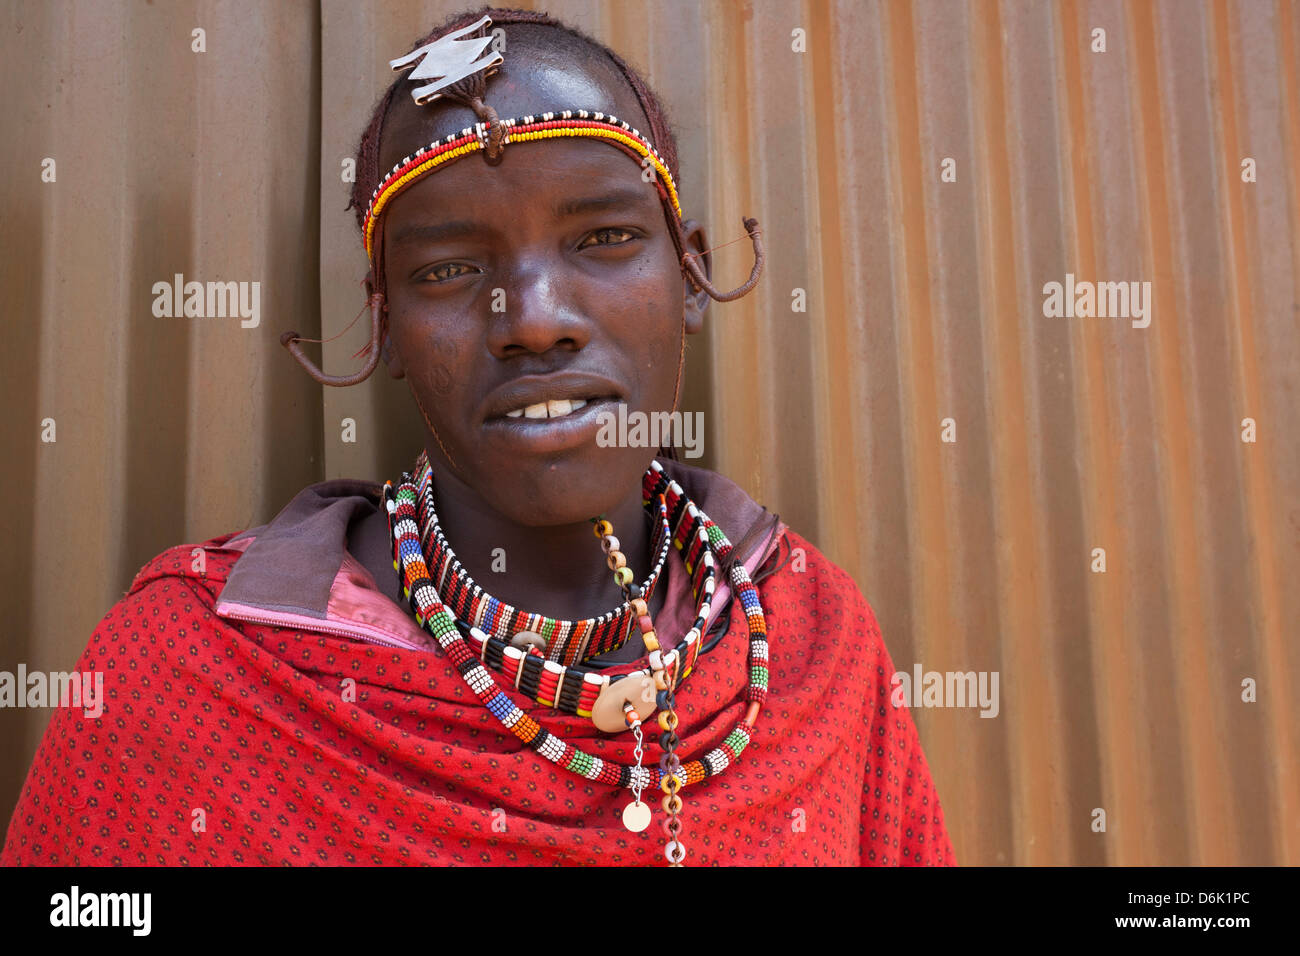 Homme massaï au Fonds d'indemnisation du prédateur, le jour de la paye du Ranch de groupe Amboseli-Tsavo Mbirikani, eco-système, Kenya, Afrique de l'Est Banque D'Images